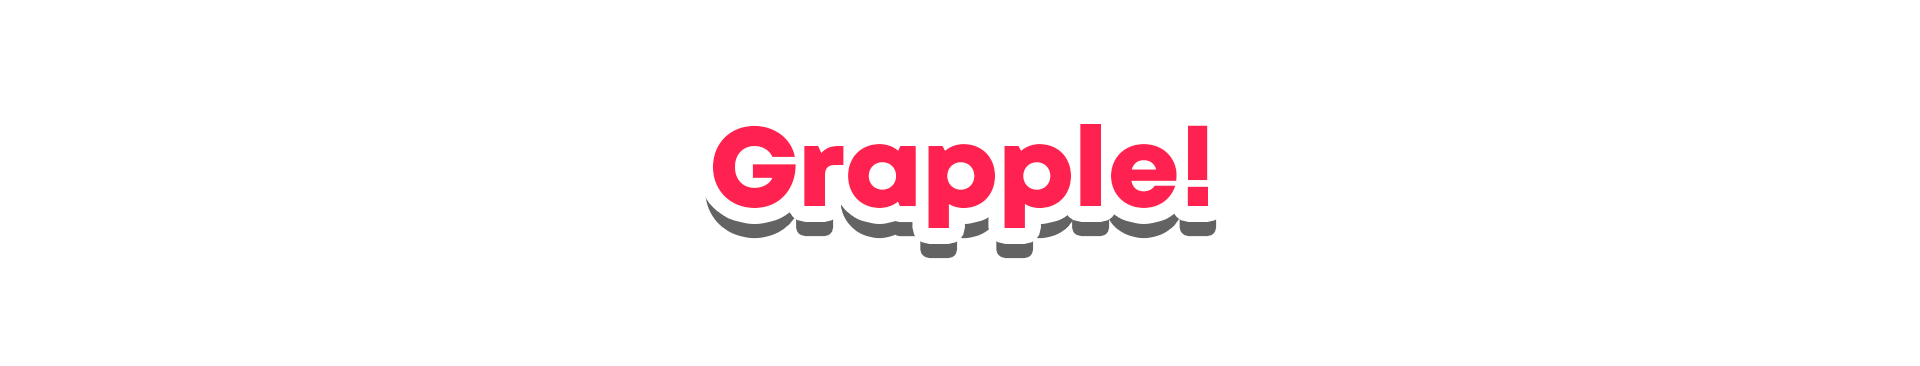 Grapple!